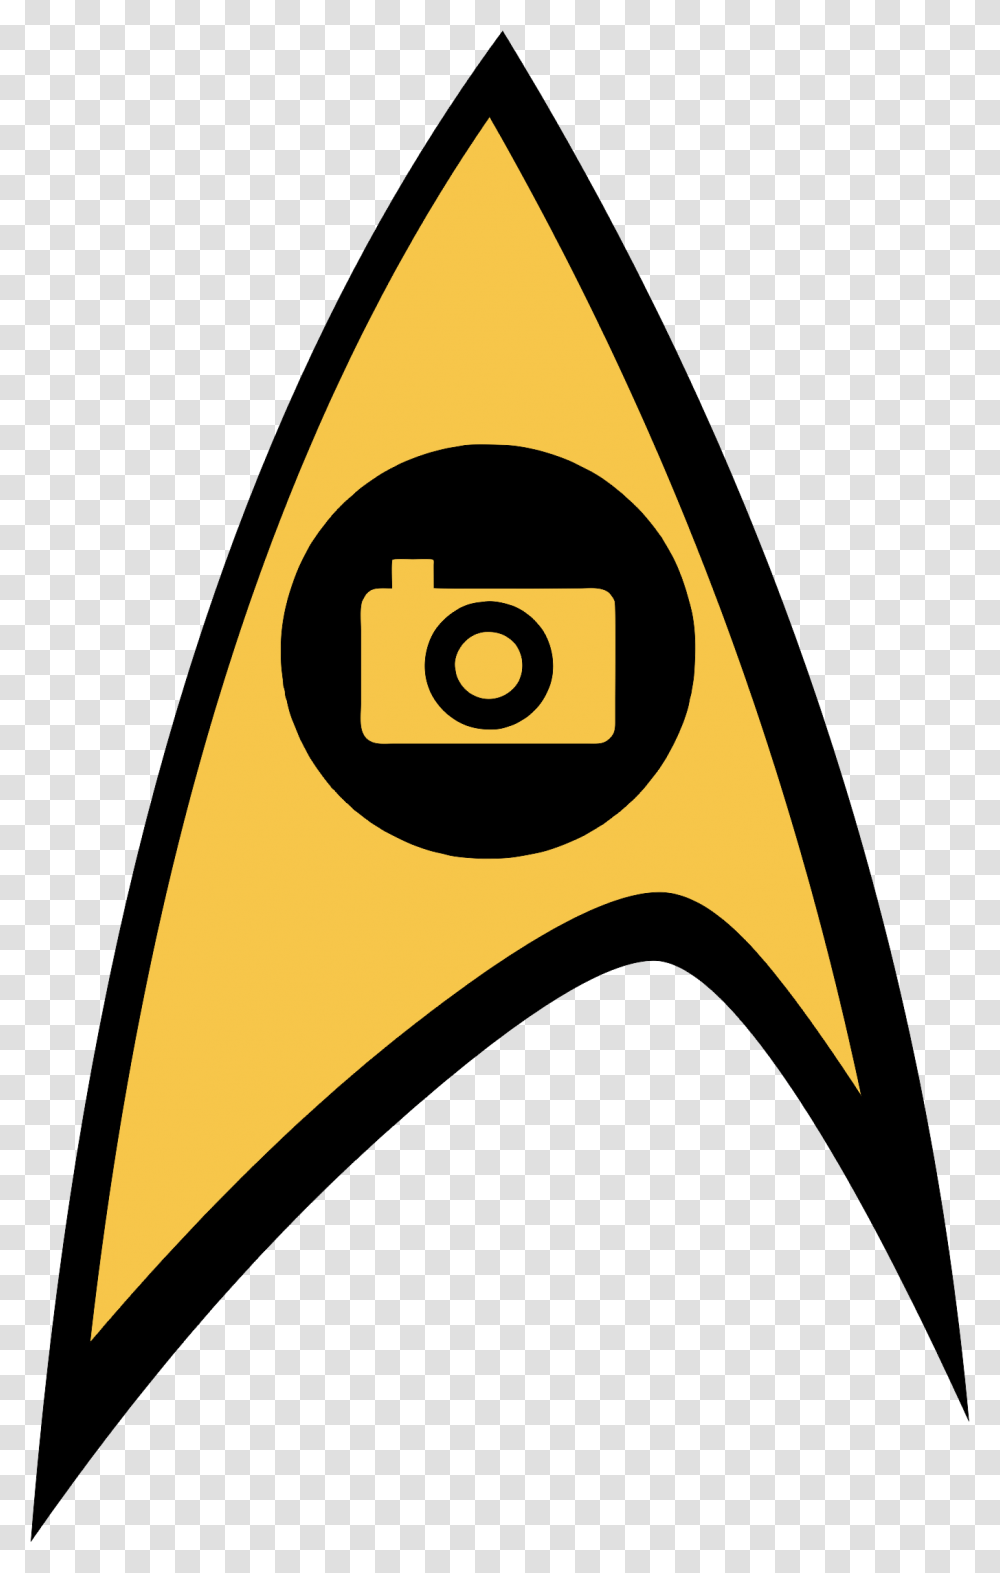 Star Trek Background Image Star Trek Insignia Svg, Label, Logo Transparent Png